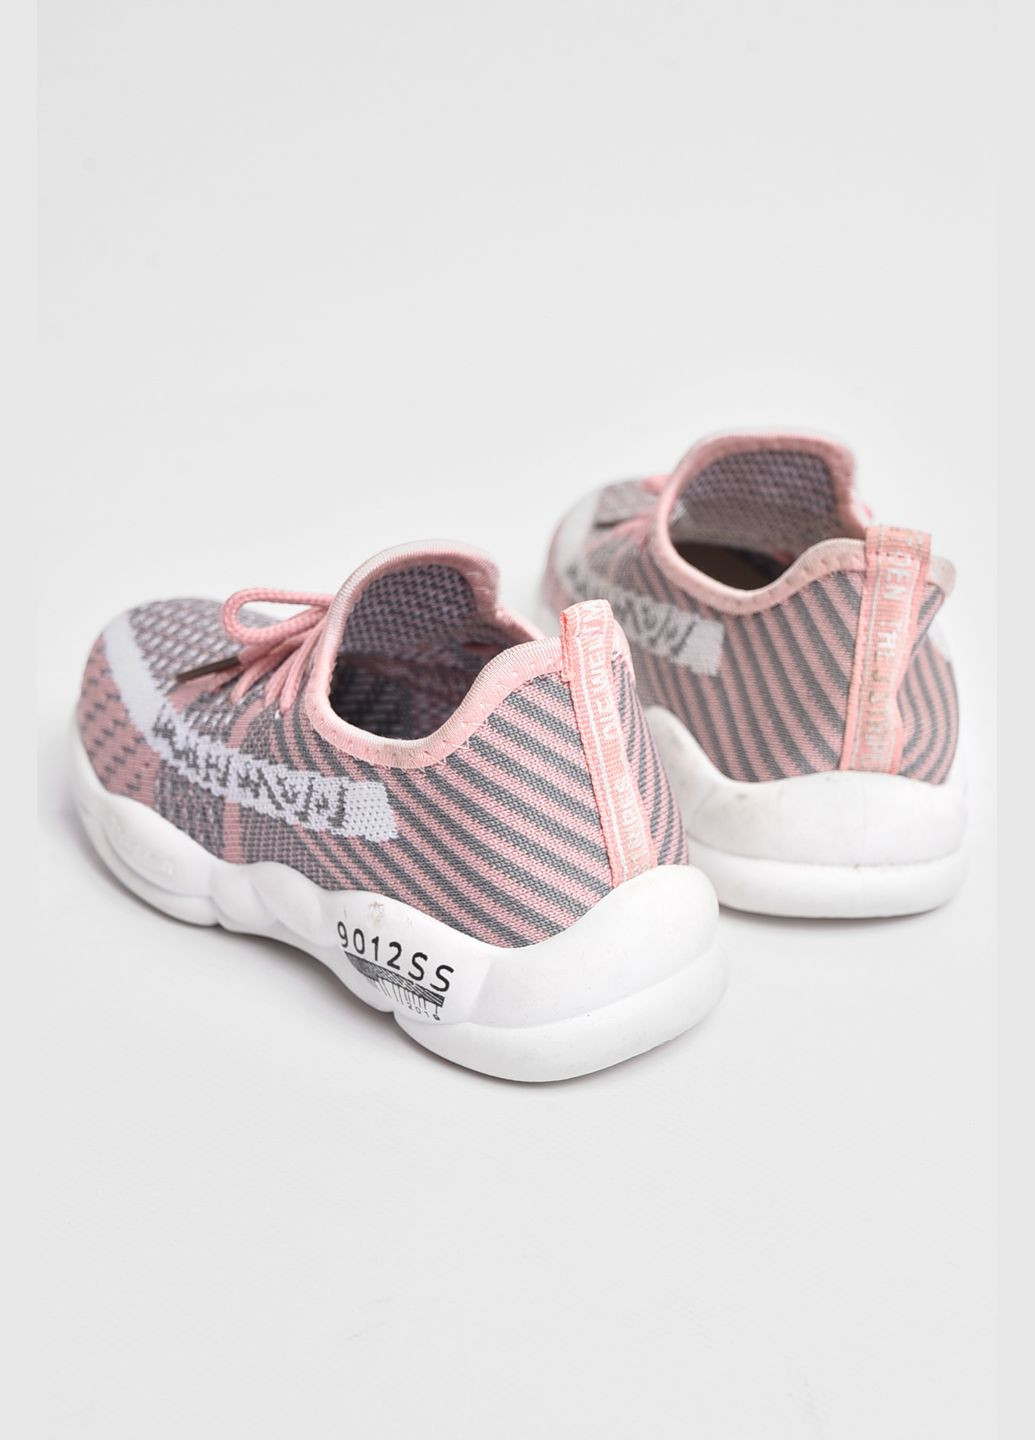 Розовые демисезонные кроссовки детские для девочки розового цвета Let's Shop